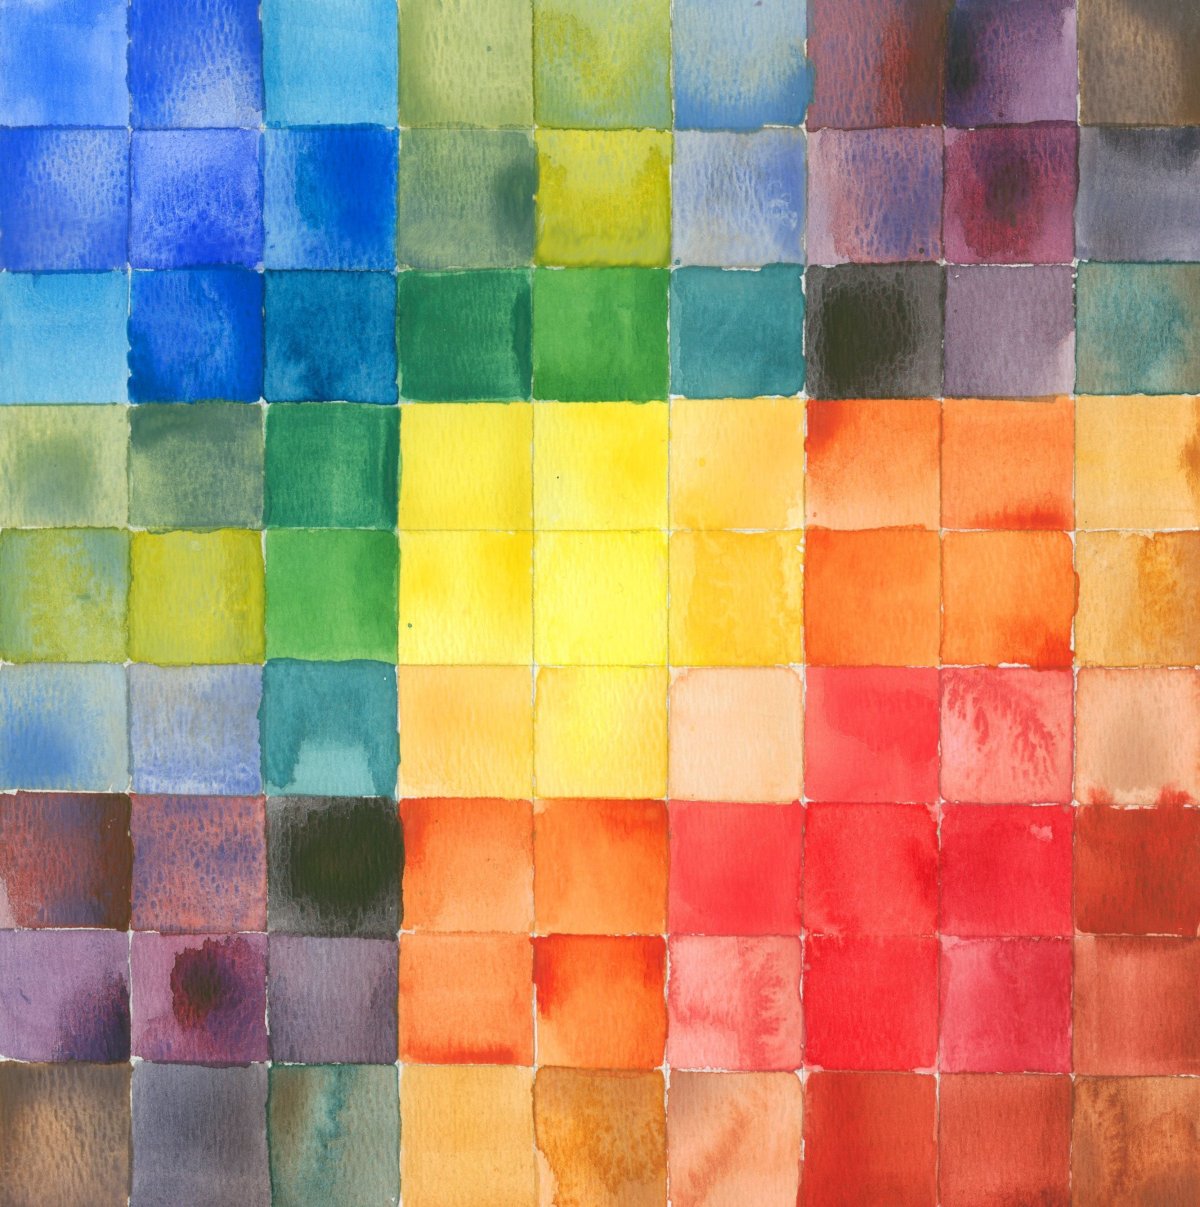 Маленький цветные квадратики. Цветные квадраты. Цветной фон. Разноцветные квадрики. Разноцветные квадратики.